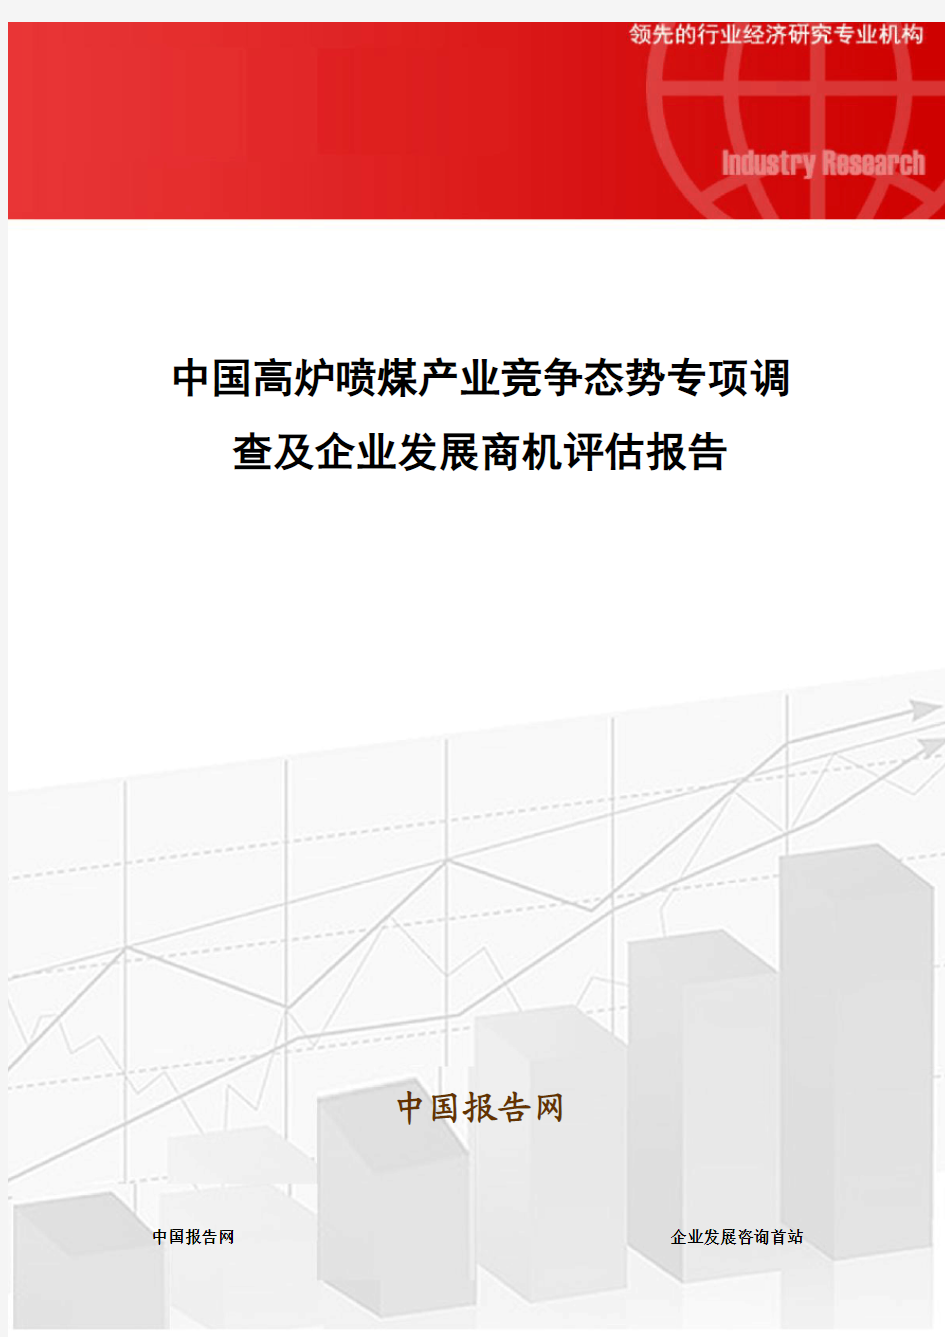 中国高炉喷煤产业竞争态势专项调查及企业发展商机评估报告